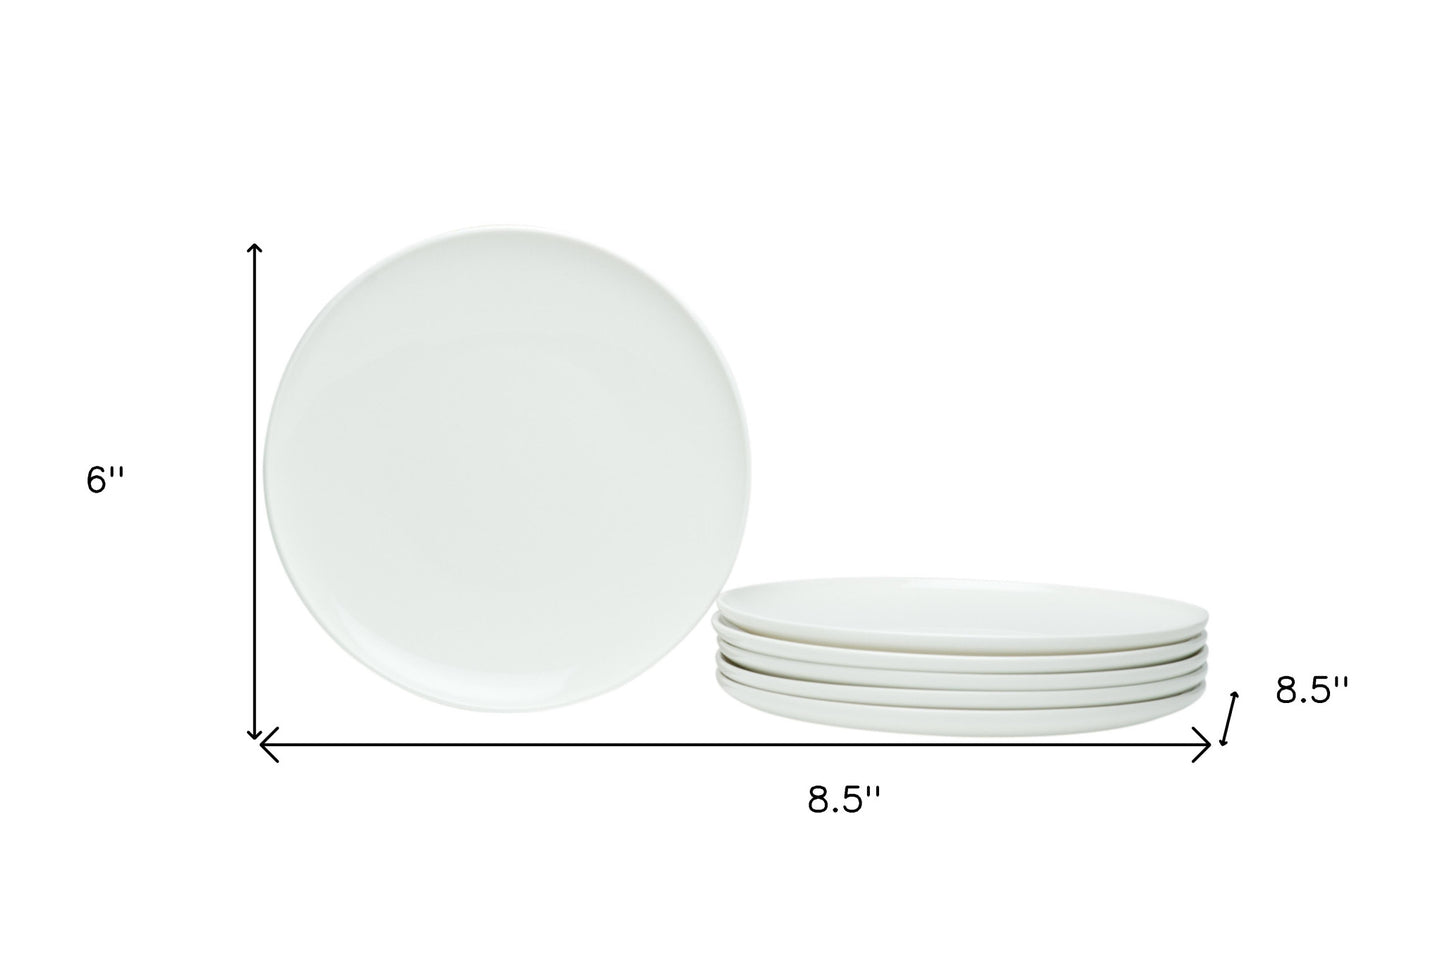 White Six Piece Porcelain Service For Six Salad Plate Set